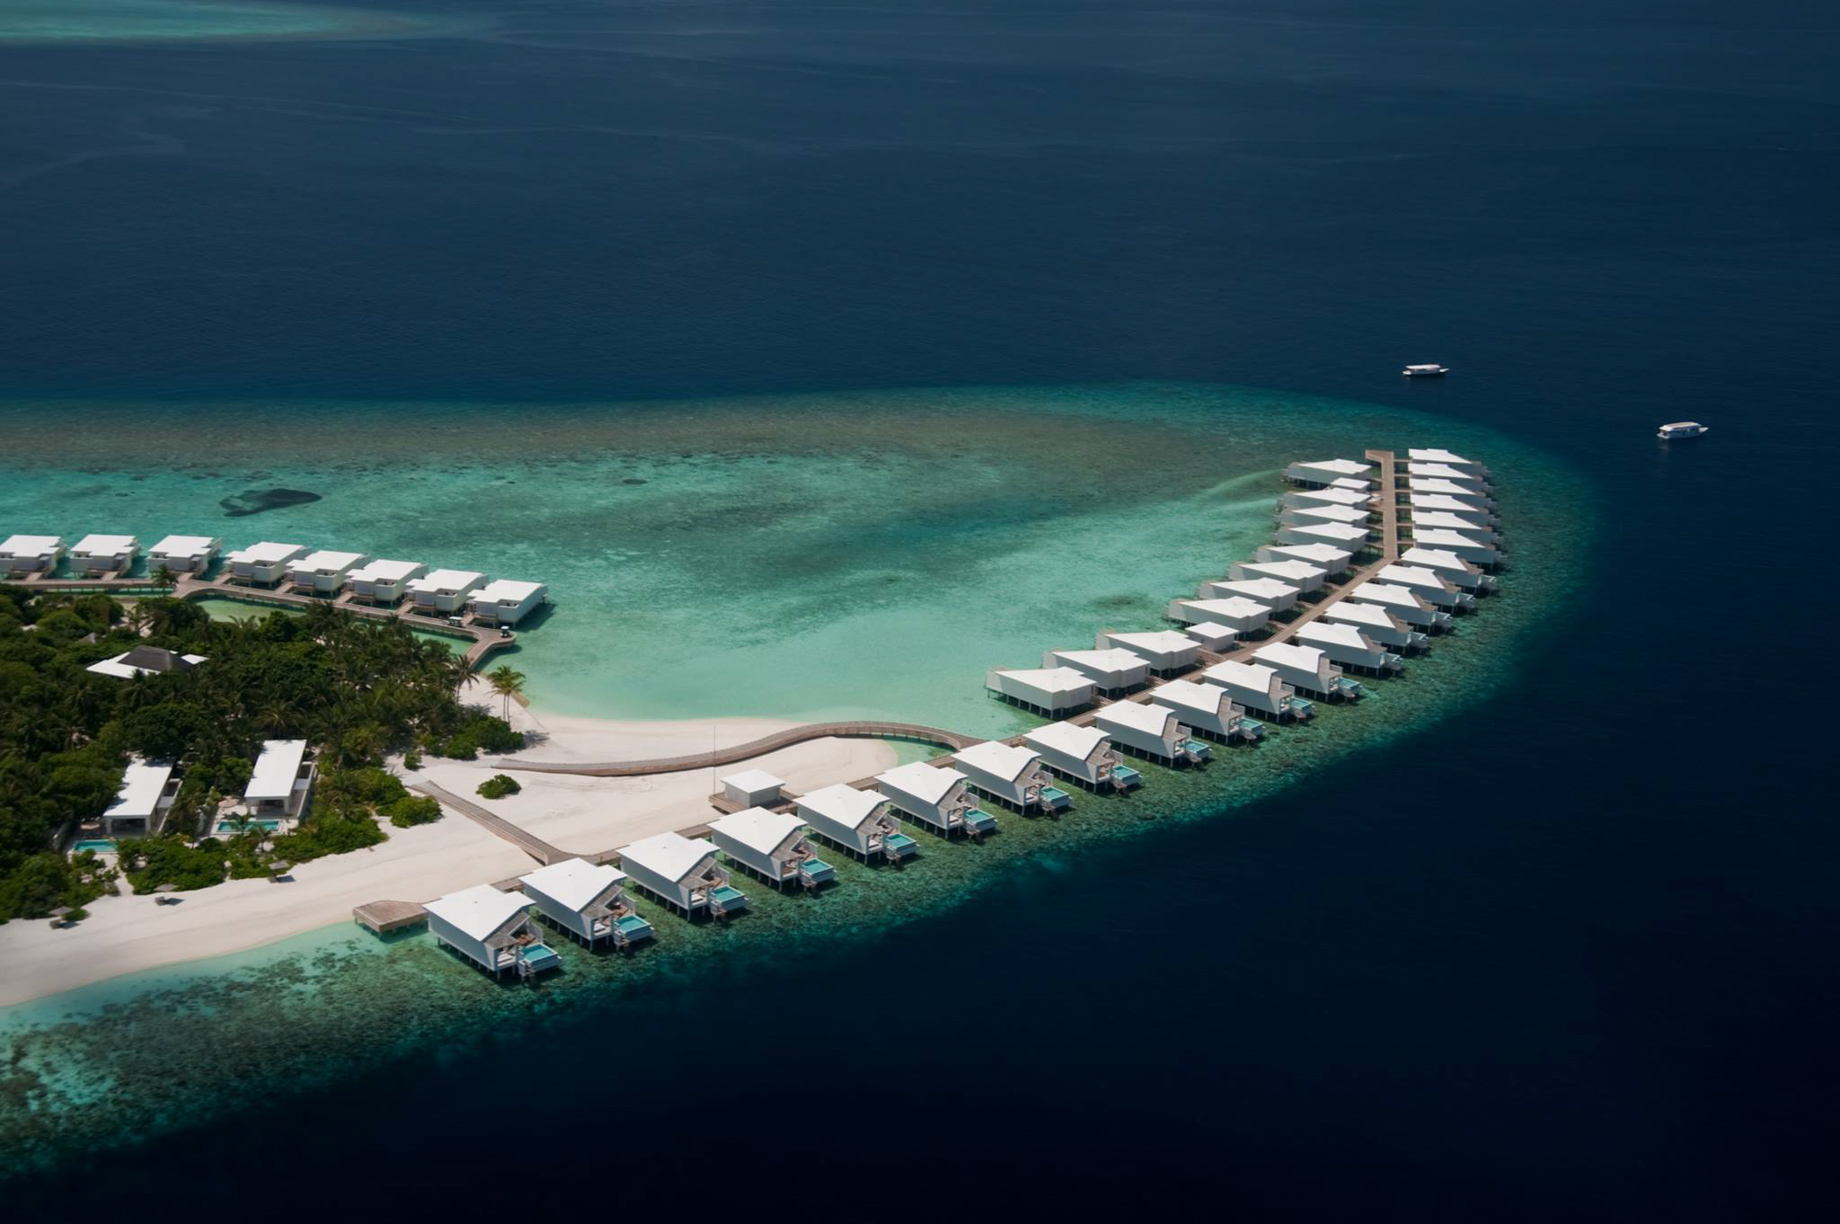 Amilla Fushi Resort and Residences – Baa Atoll, Maldives – Overwater Villa Aerial